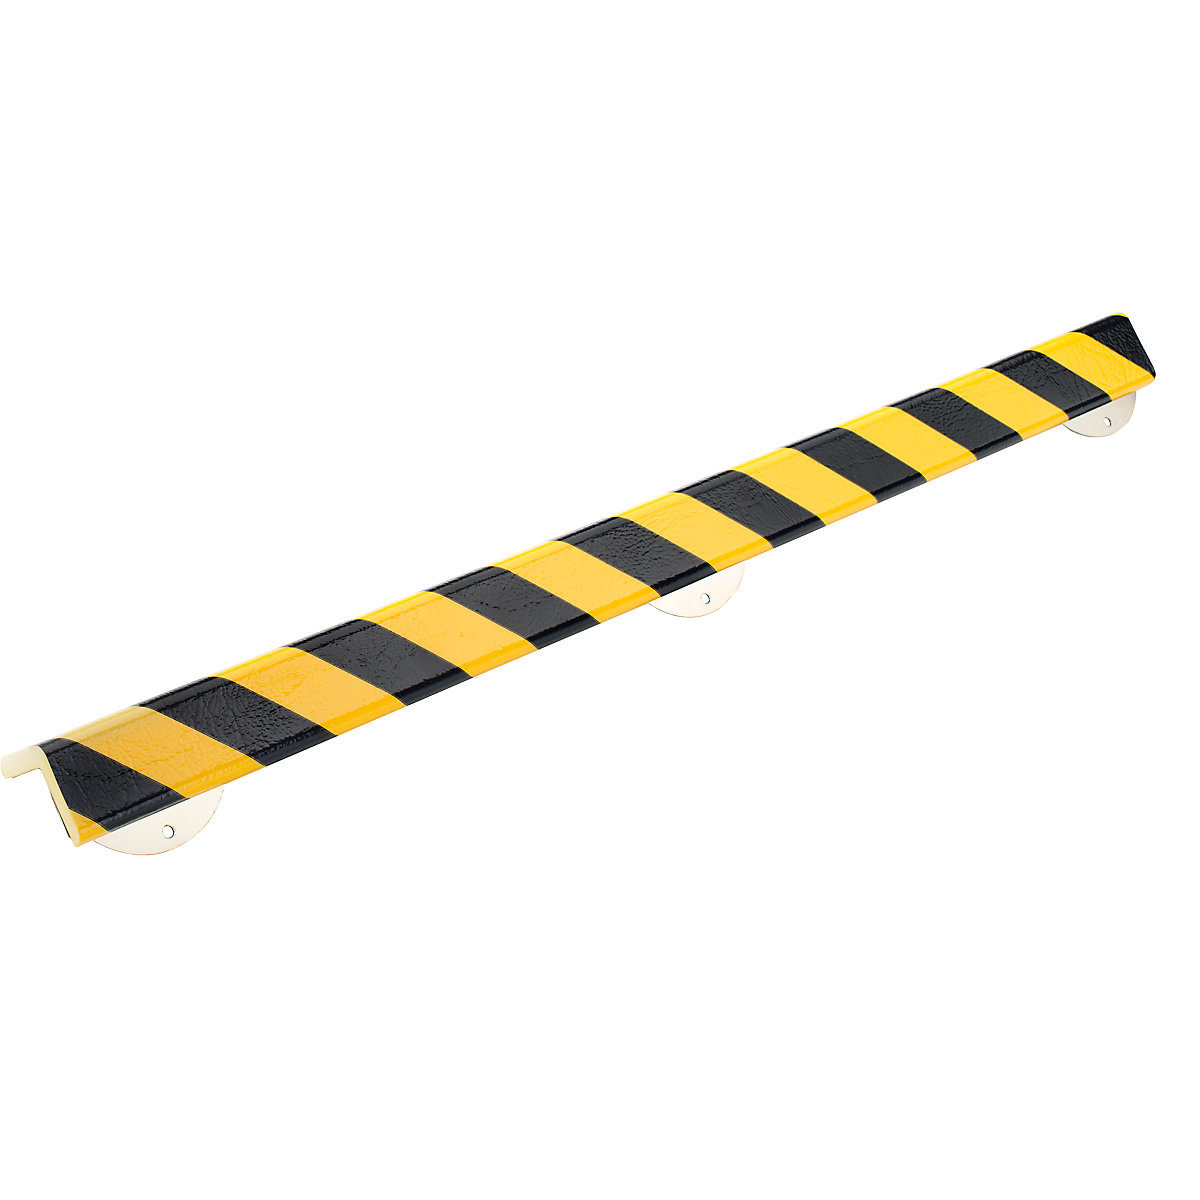 Protection des coins Knuffi® avec rail de montage – SHG, type H+, pièce de 1 m, noir/jaune